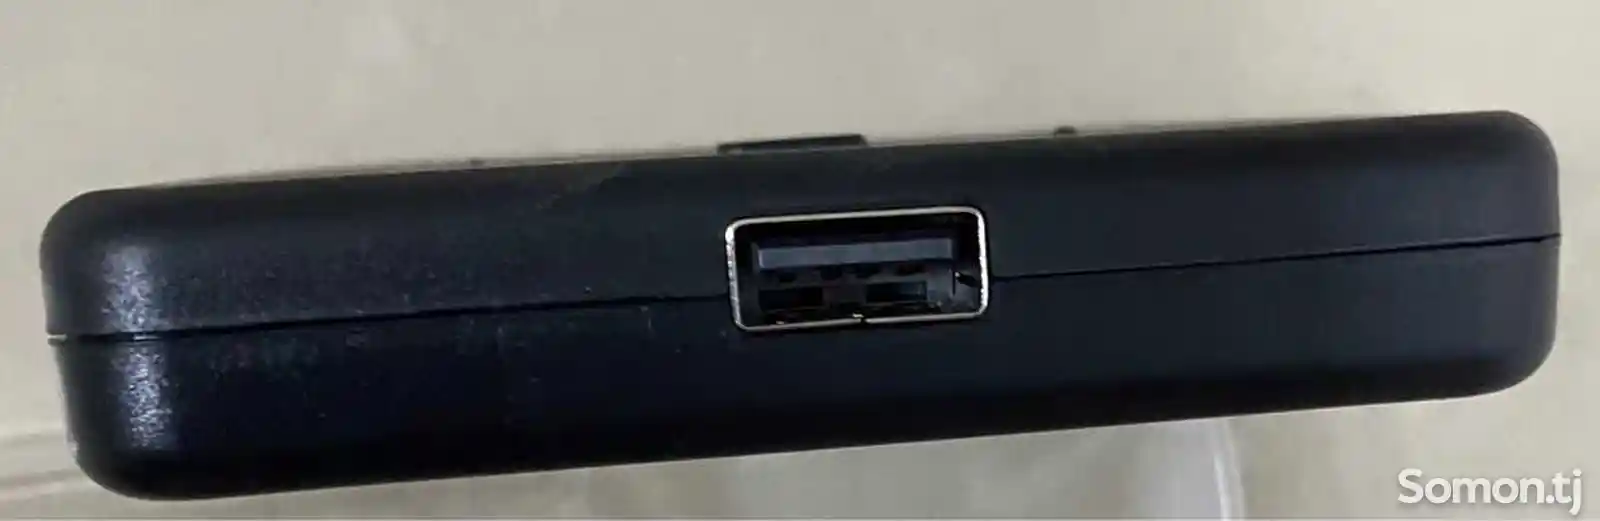 Переключатель HDMI Kvm Switch+Usb-3